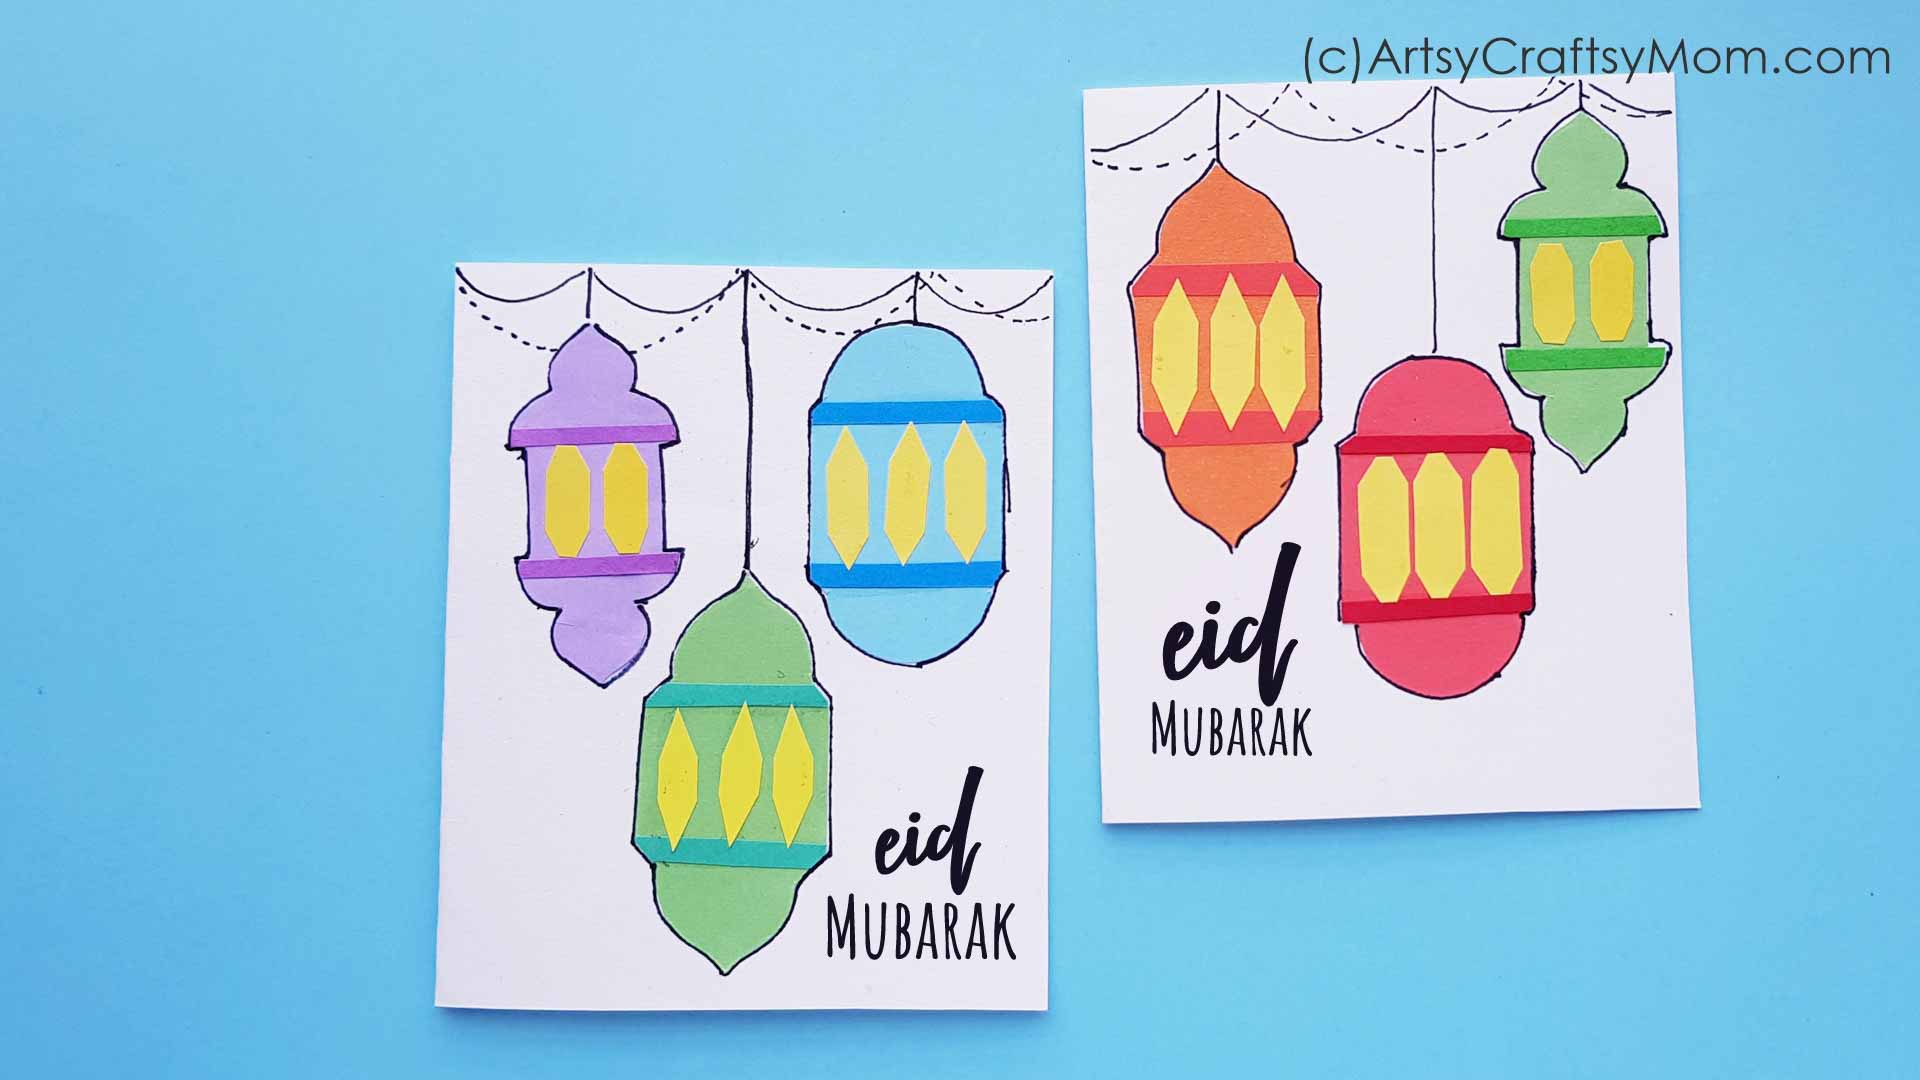 diy-easy-eid-mubarak-card-for-kids-artsy-craftsy-mom